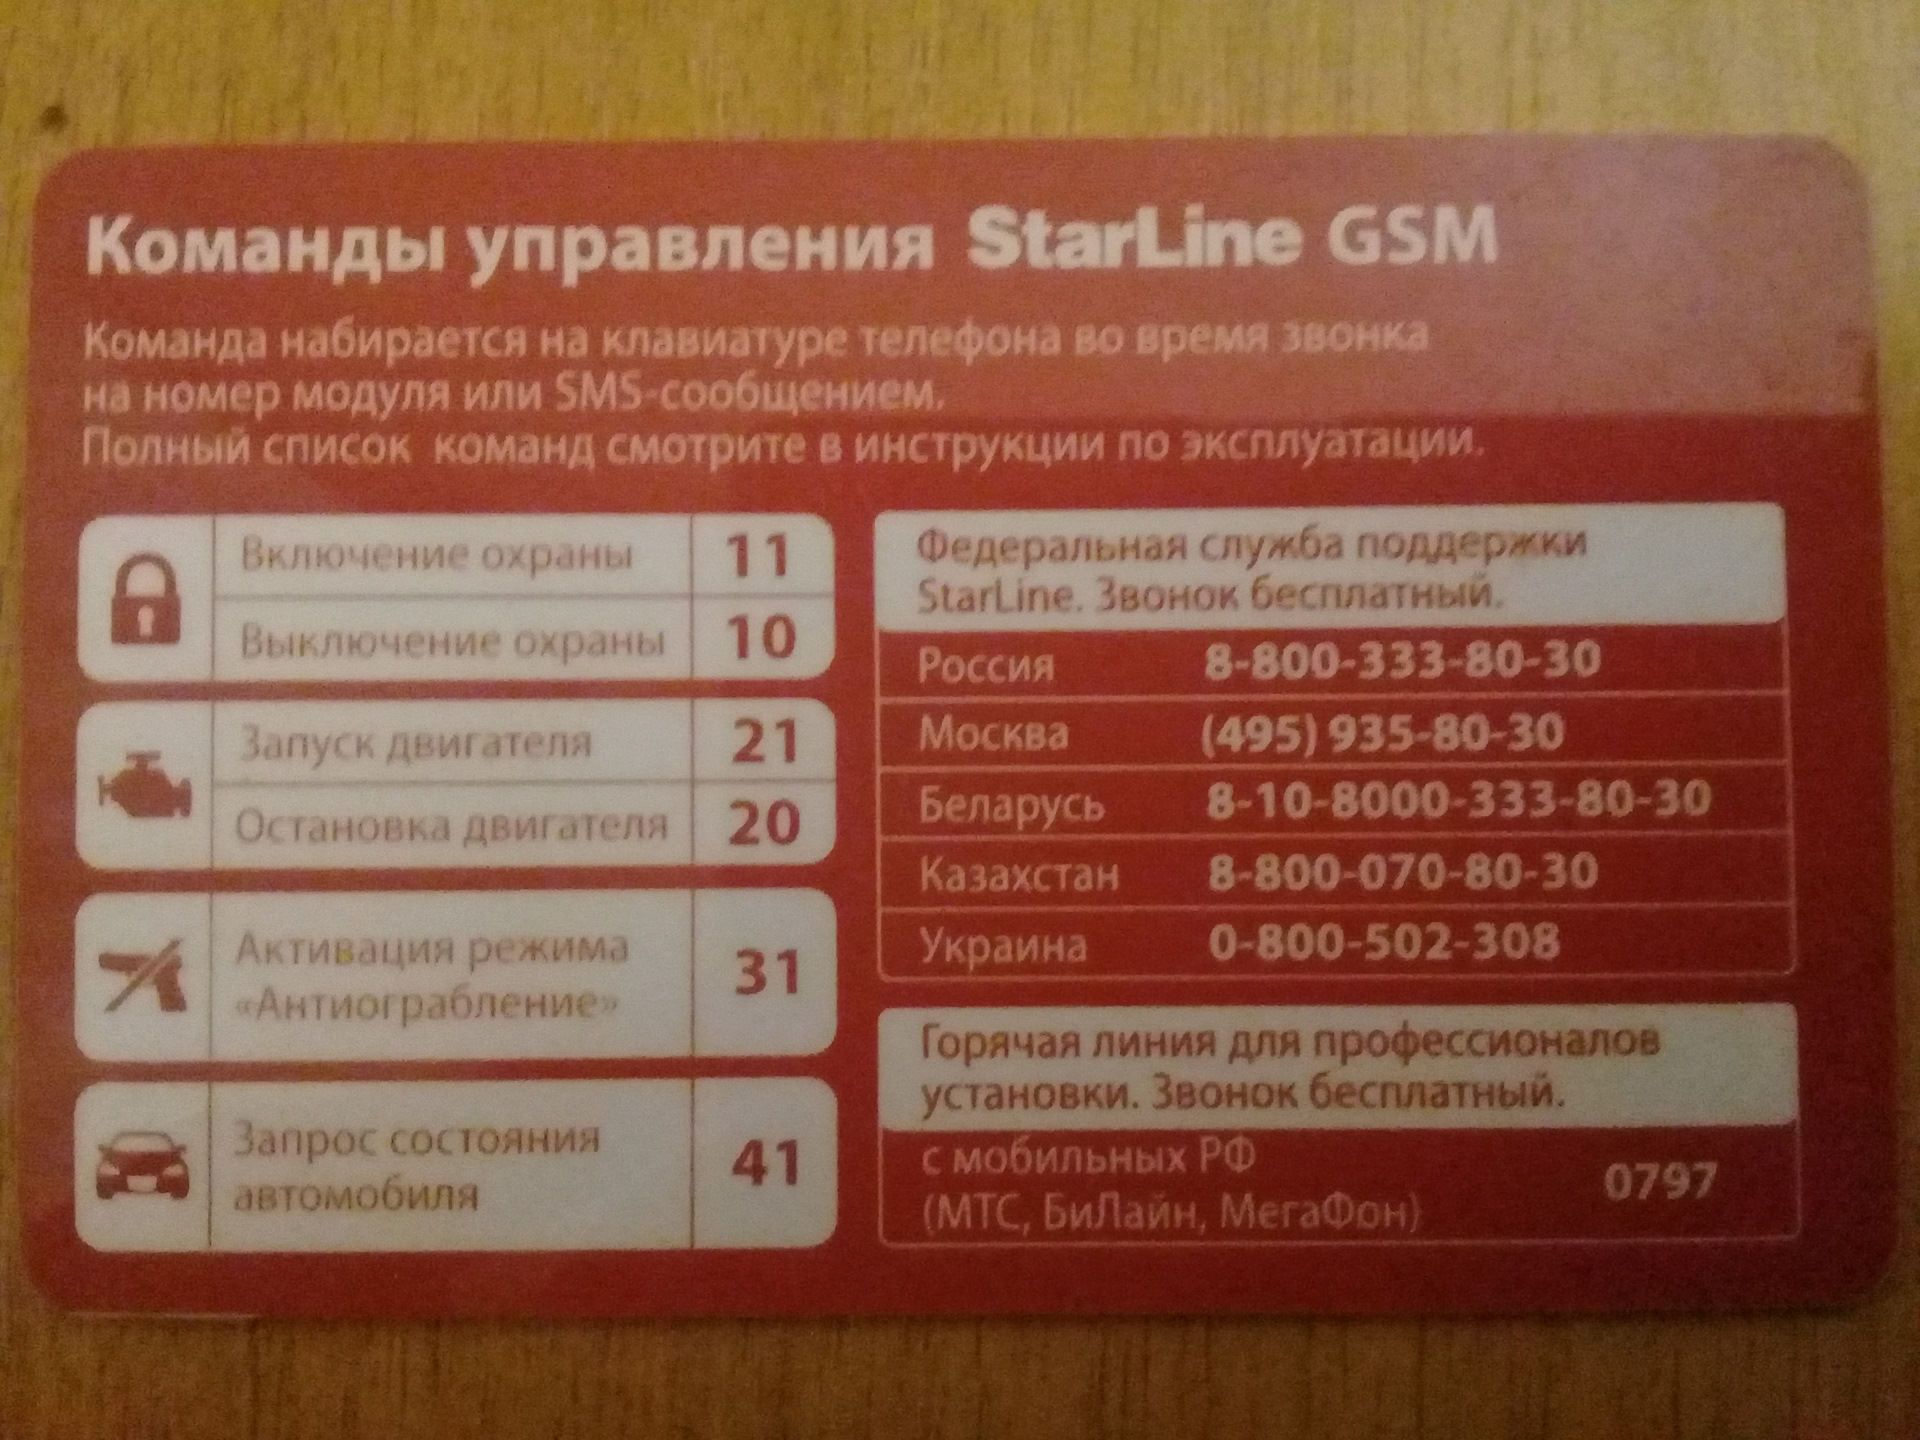 Старлайн техподдержка телефон. Команды старлайн а93. Команды GSM STARLINE a93.